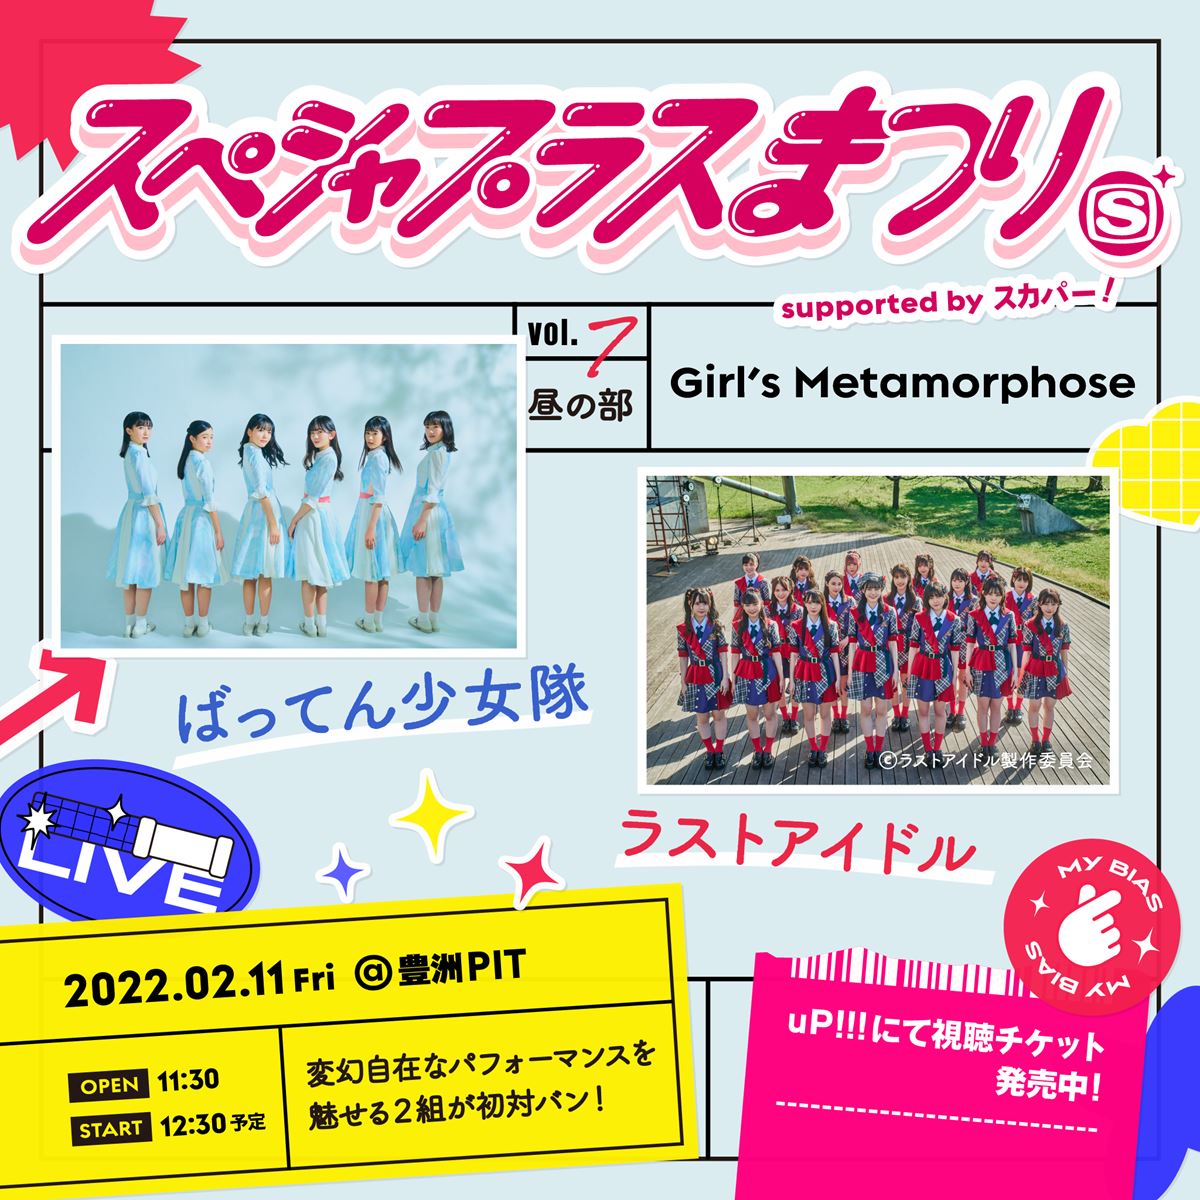 『スペシャプラスまつり vol.7 supported by スカパー! 昼の部 –Girl’s Metamorphose-』告知画像